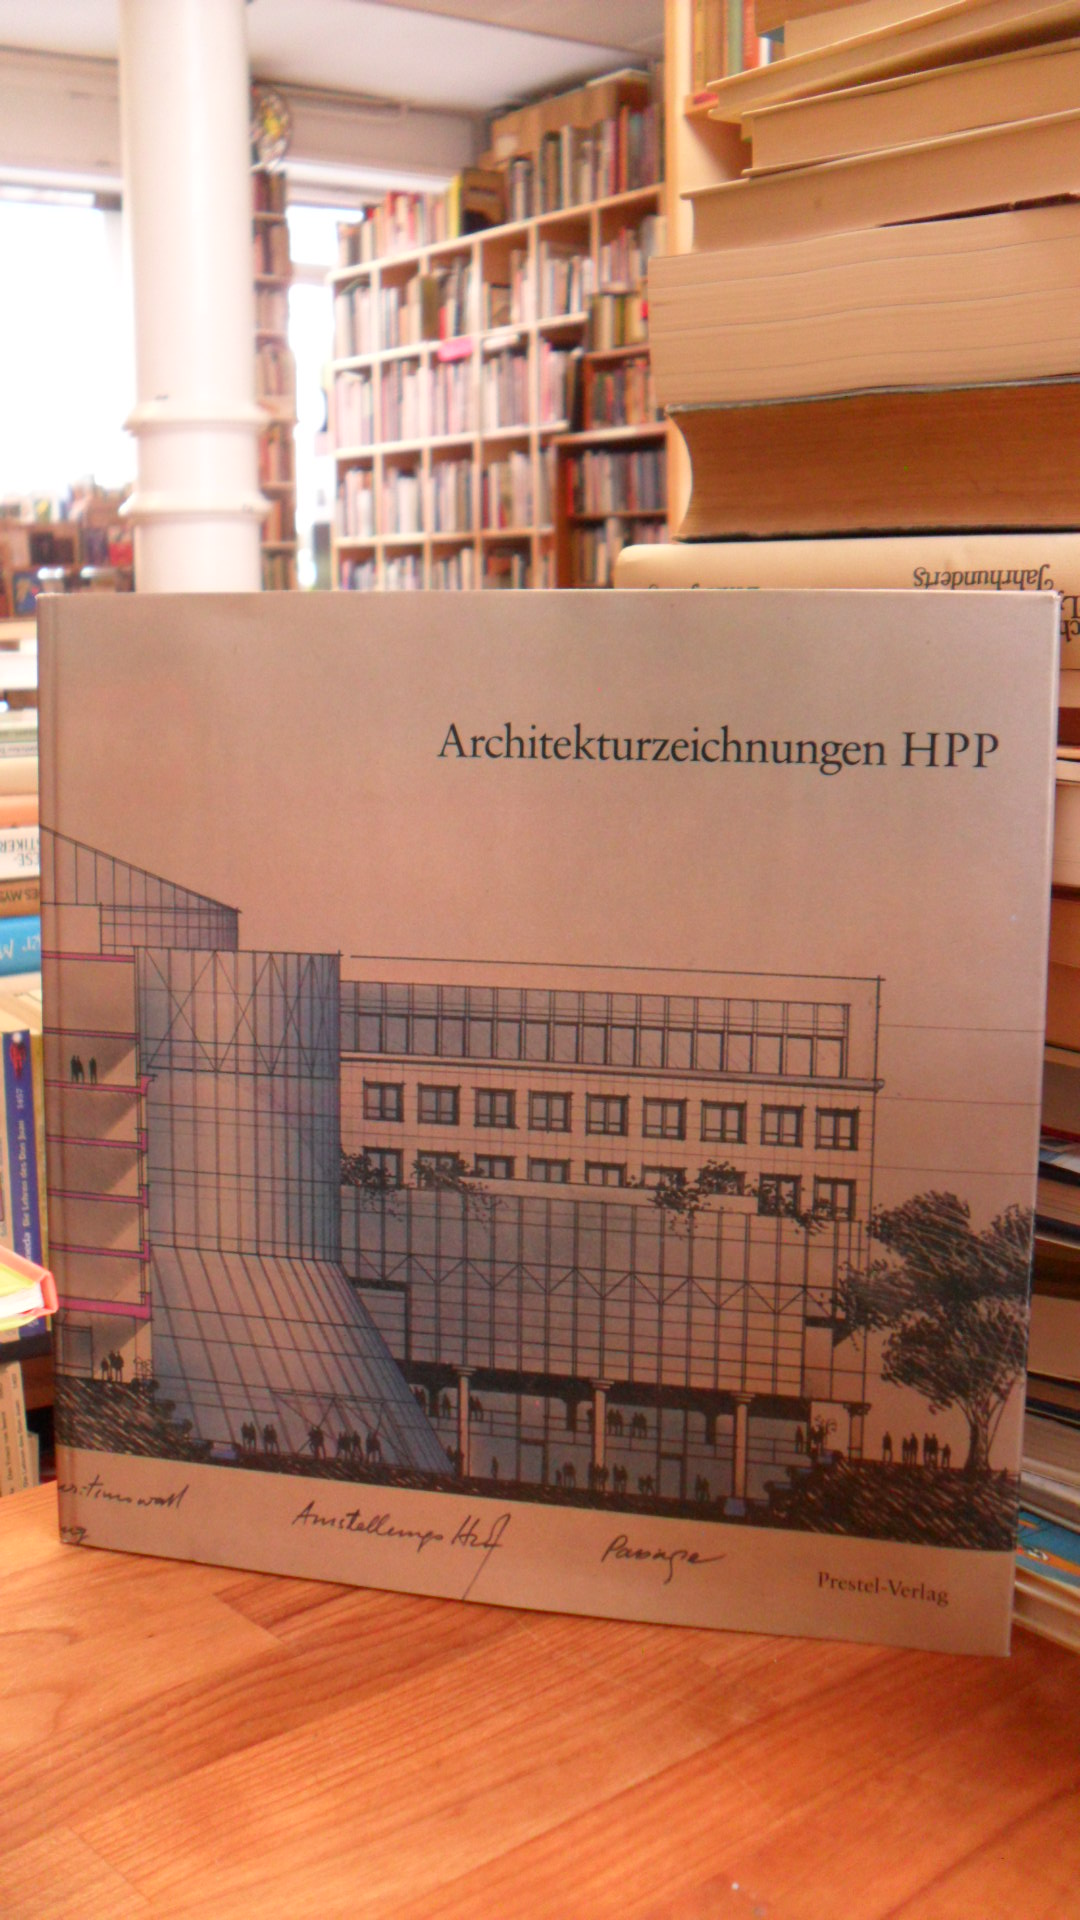 Architekturzeichnungen HPP – Zeichnungen aus der Sammlung HPP Hentrich-Petschnig